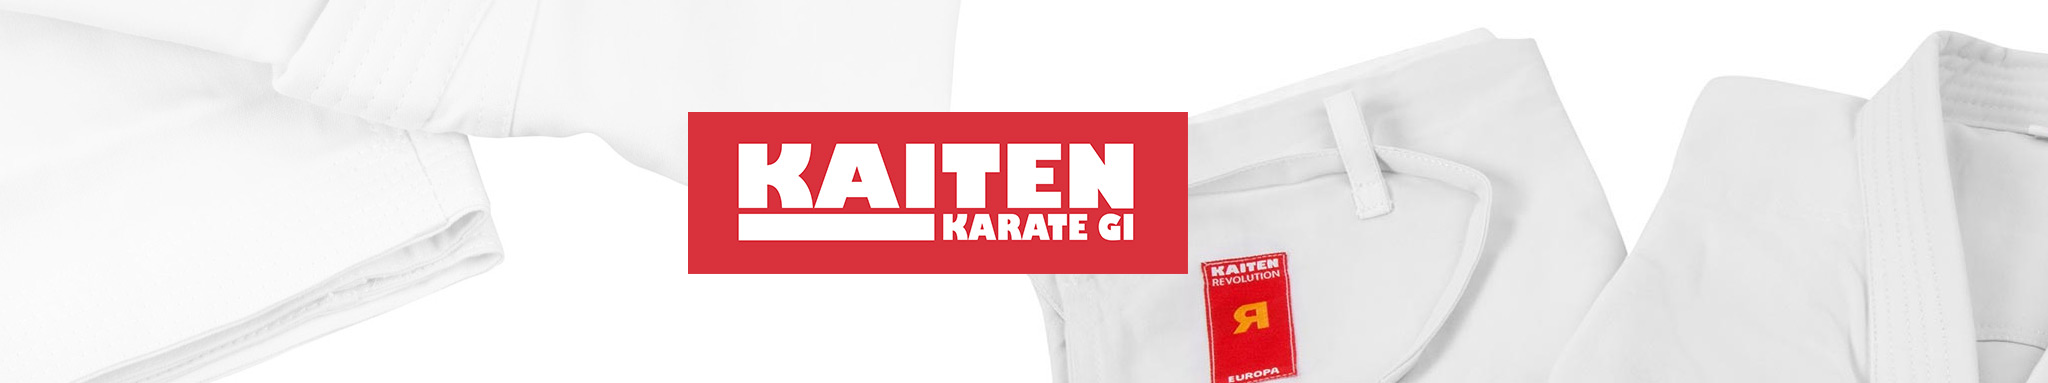 Kaiten : équipements & vêtements de la marque Kaiten | Dragon Bleu